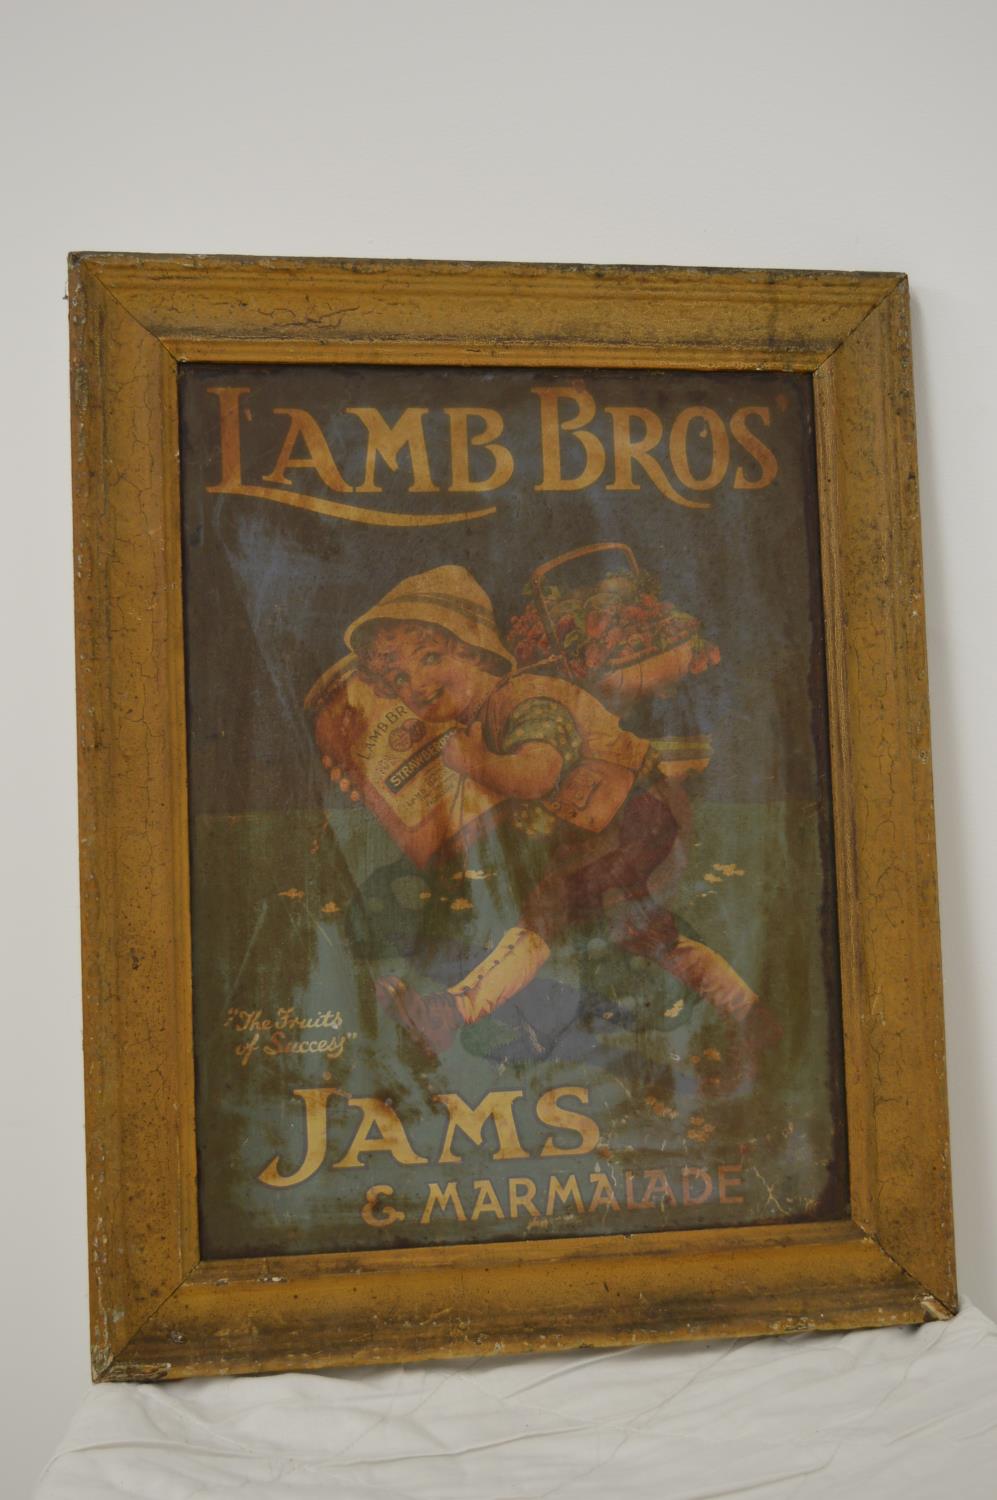 Lamb Bros' Jams and Marmalade advertising print.